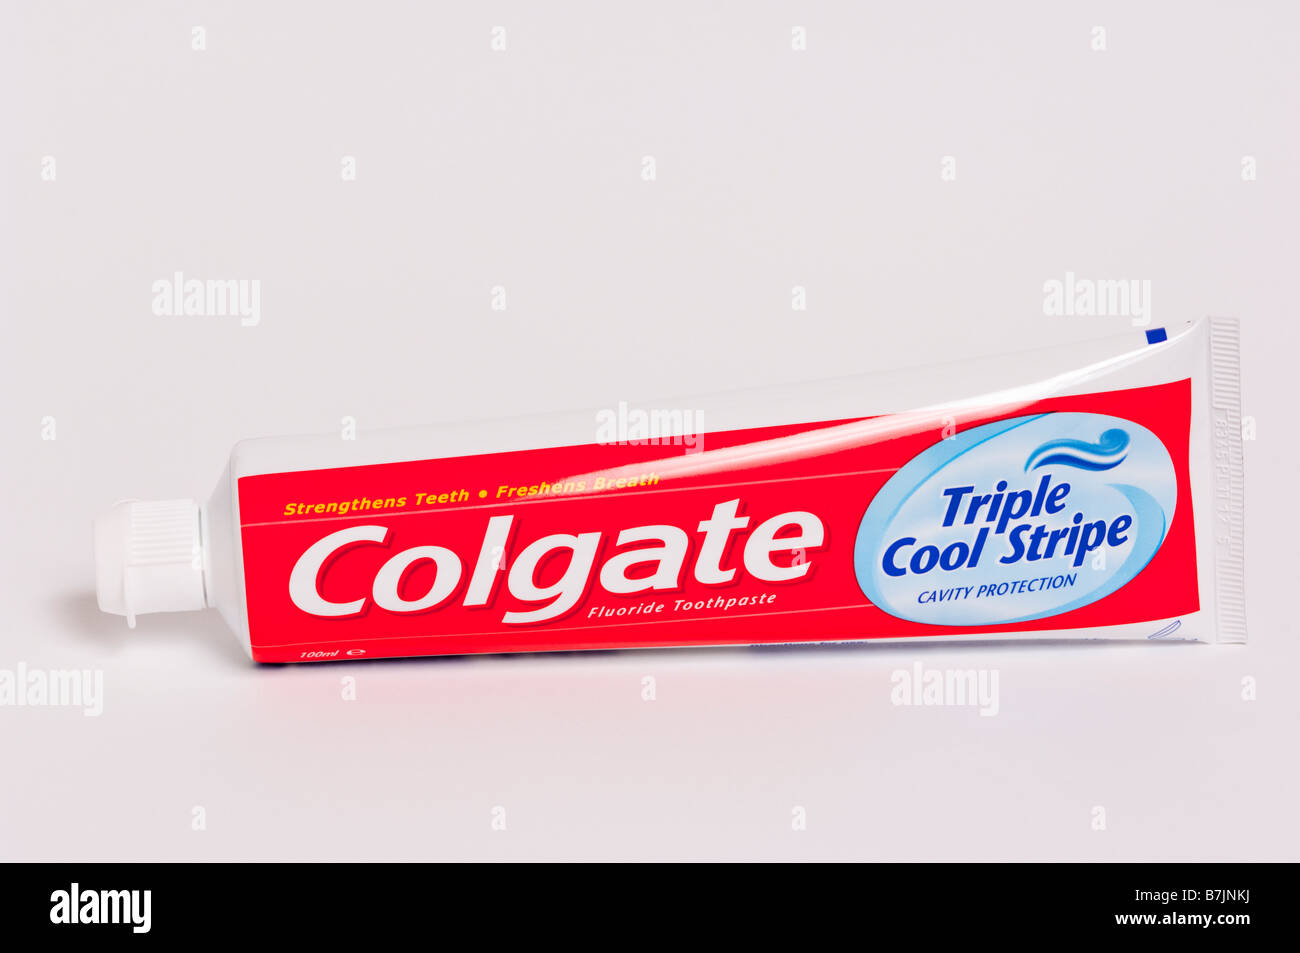 Eine Tube Colgate triple cool Streifen Hohlraum Schutz Fluorid Zahnpasta für Zahnreinigung erschossen auf einem weißen Hintergrund Stockfoto